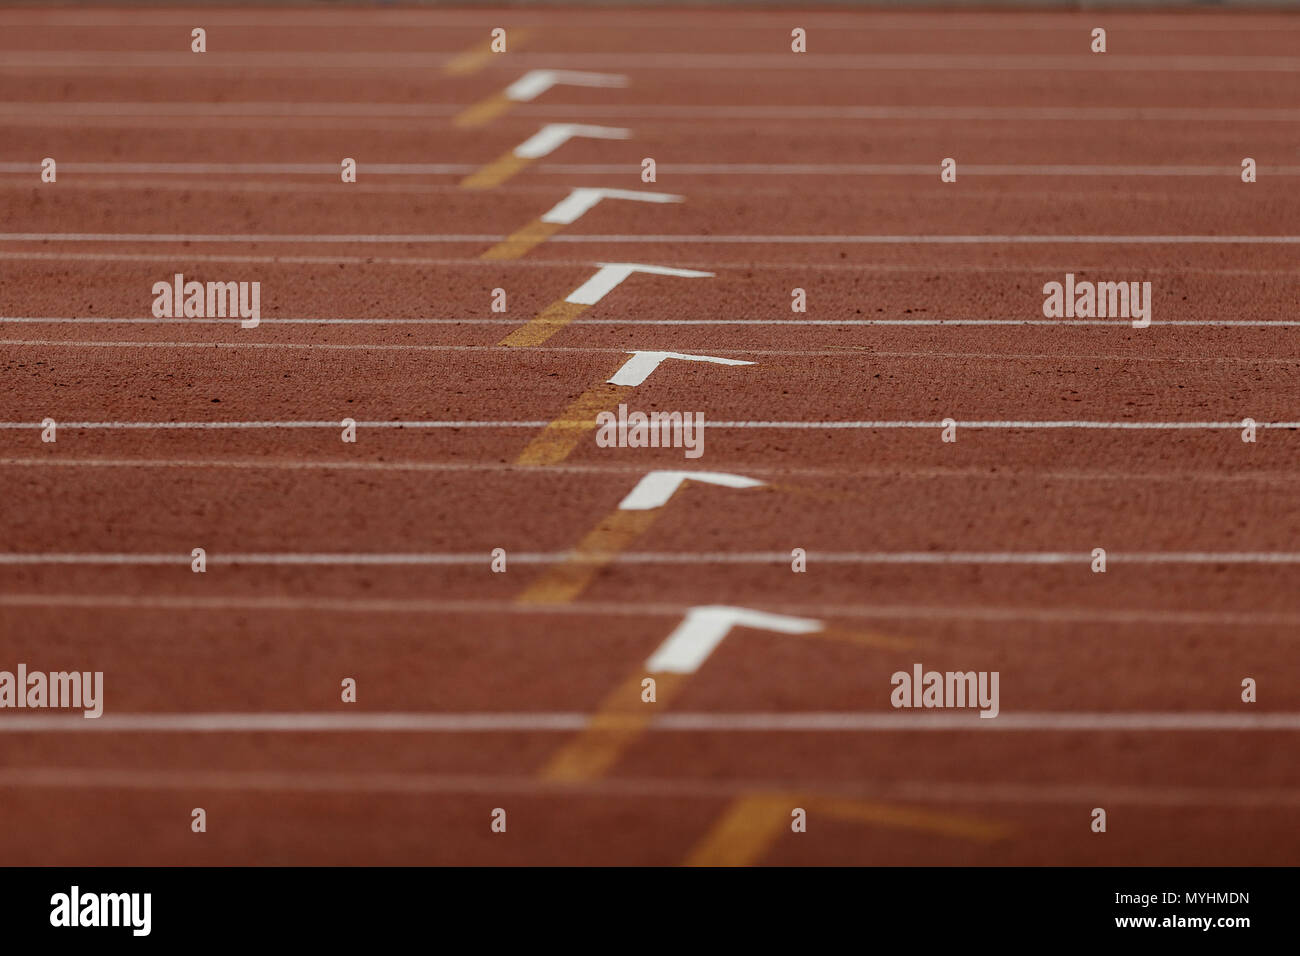 Marcatura linea pista di atletica leggera in 400 metri ostacoli in esecuzione Foto Stock